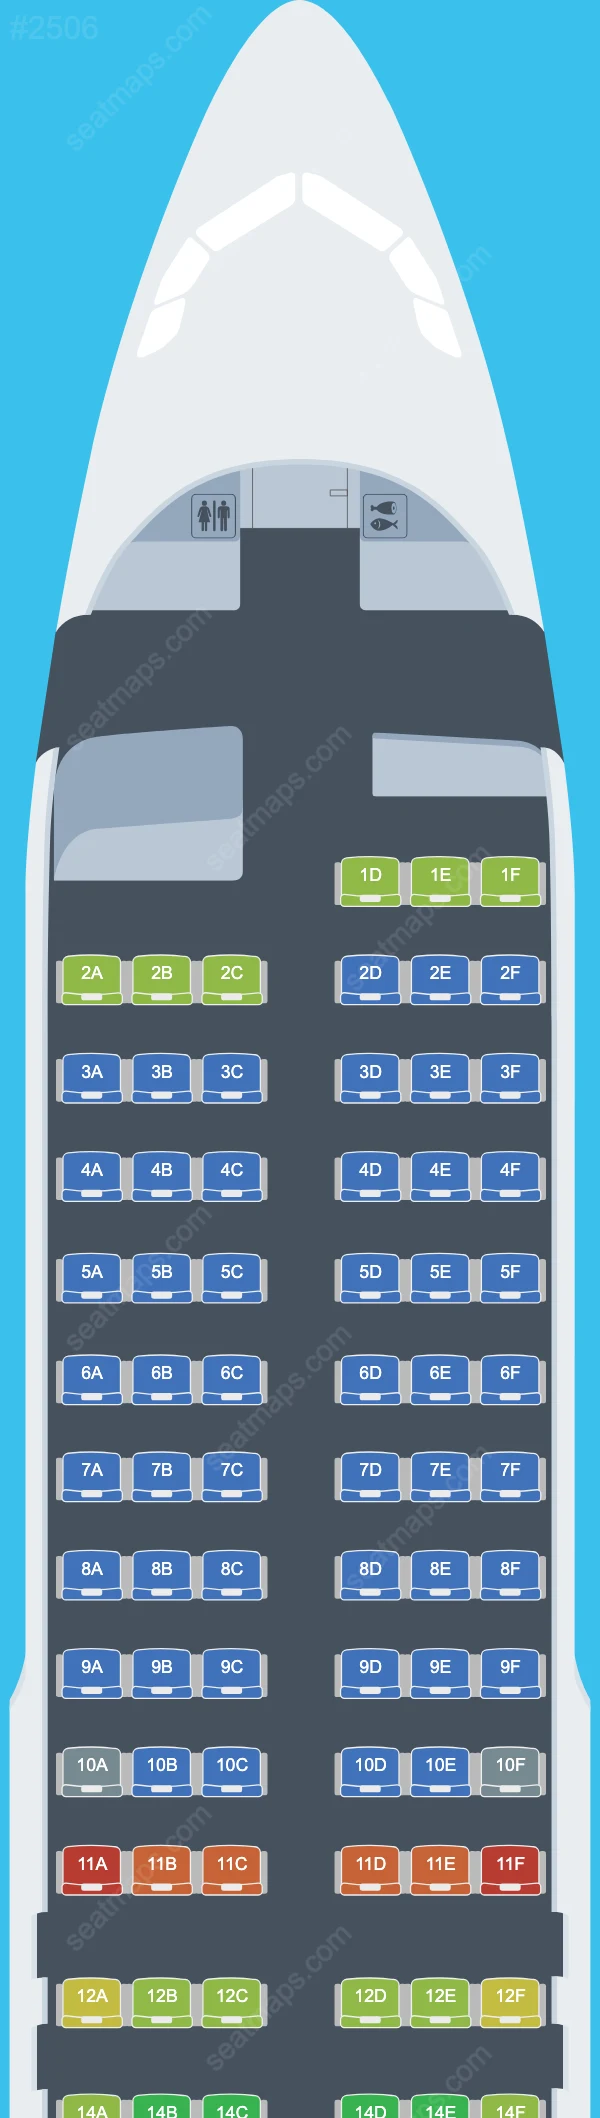 Air France Airbus A320 Seat Maps A320-200 V.2